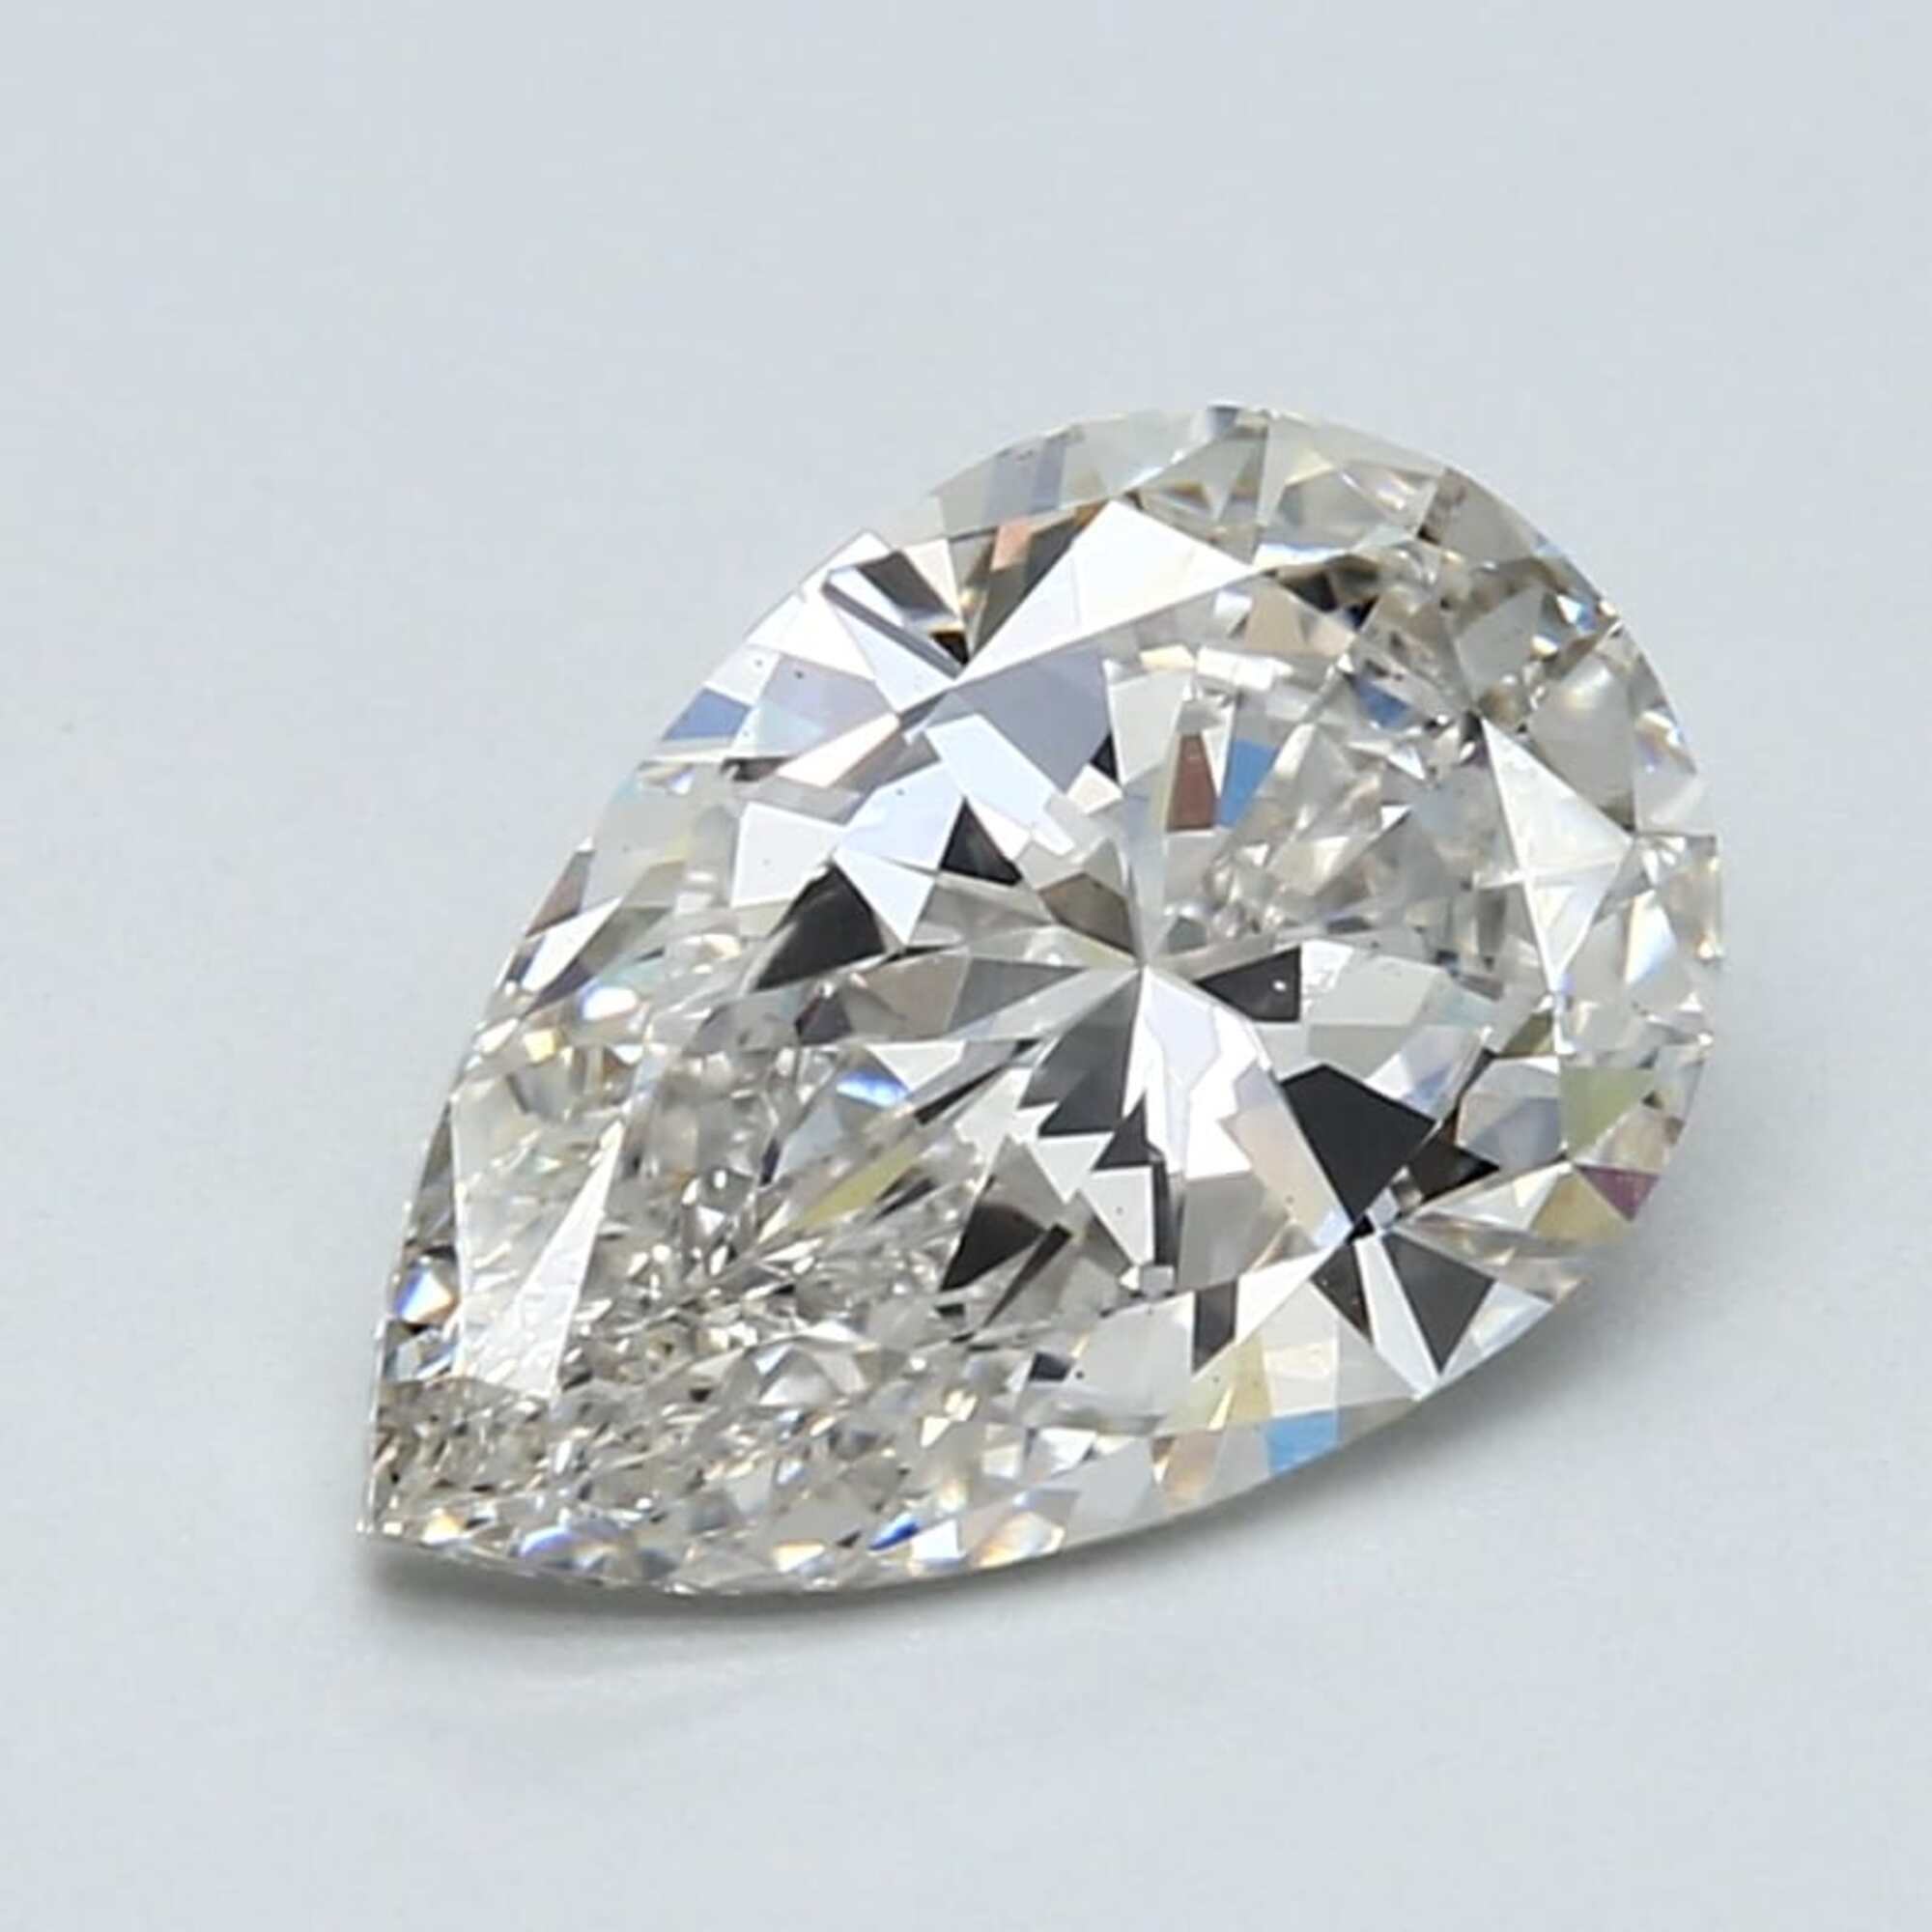 2.03 ct H VS1 Pear cut Diamond